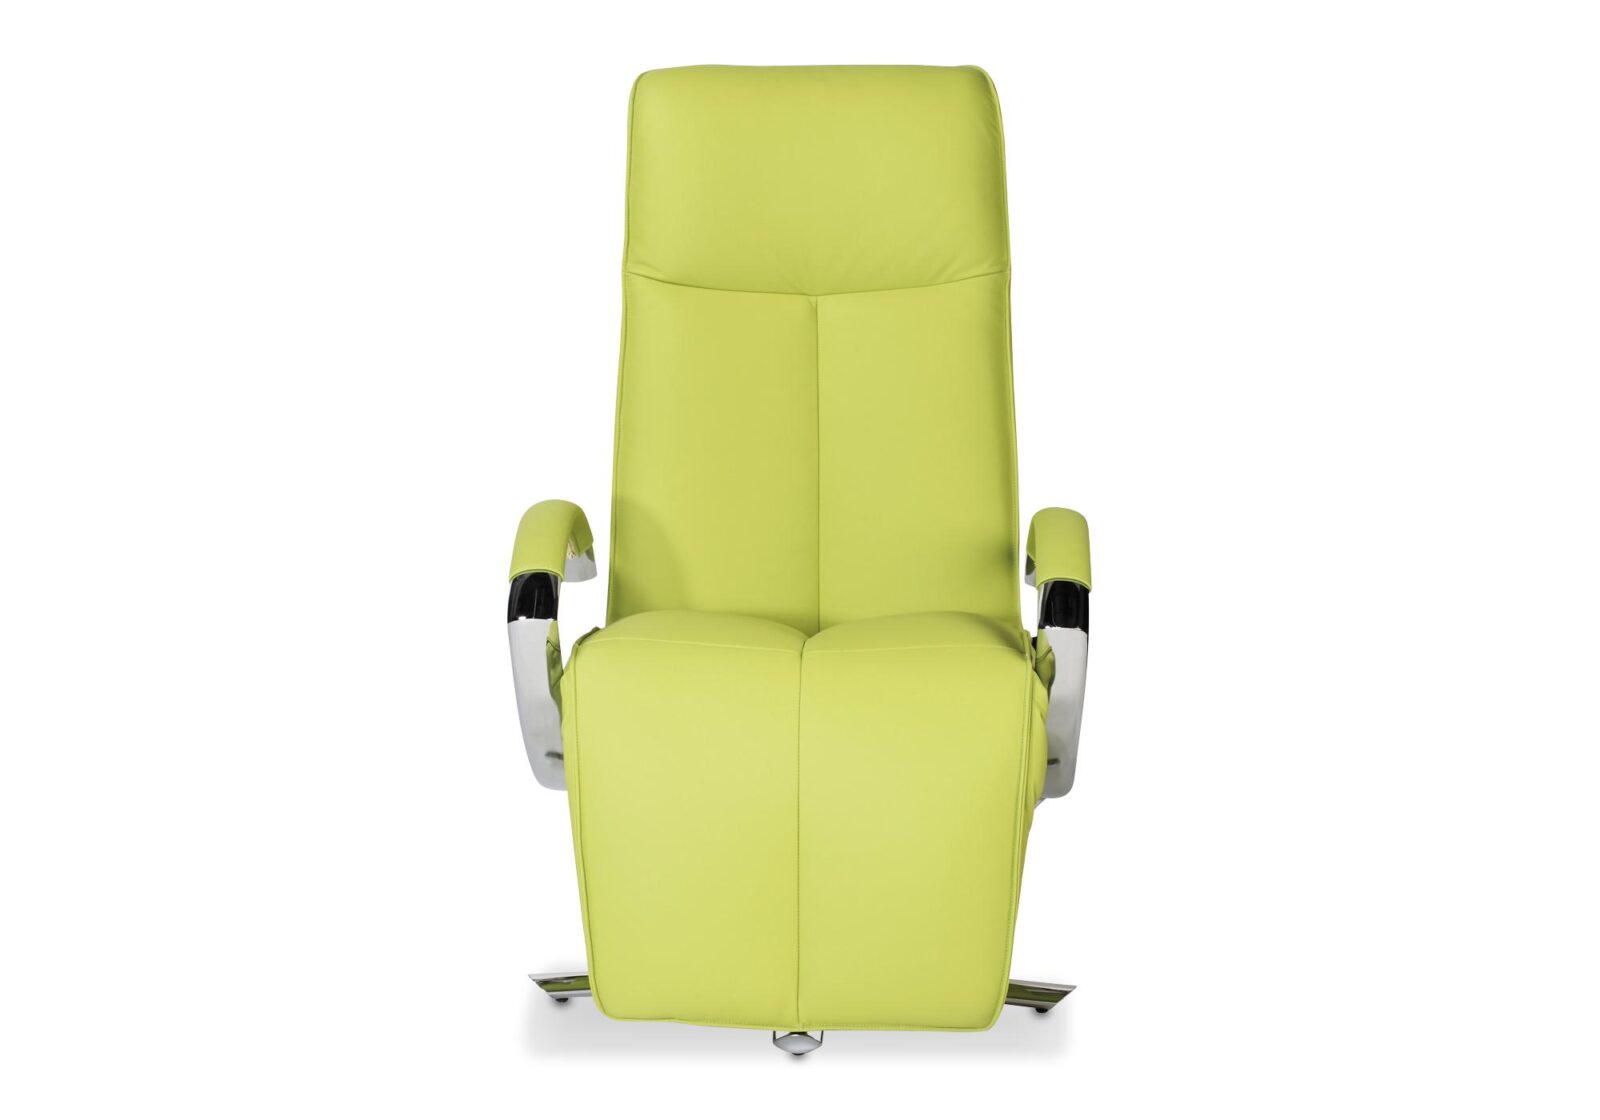 Relaxsessel Carlo Strässle mit Motoren. Bezug: Leder Ambiente. Farbe: Hellgrün. Erhältlich bei Möbel Gallati.